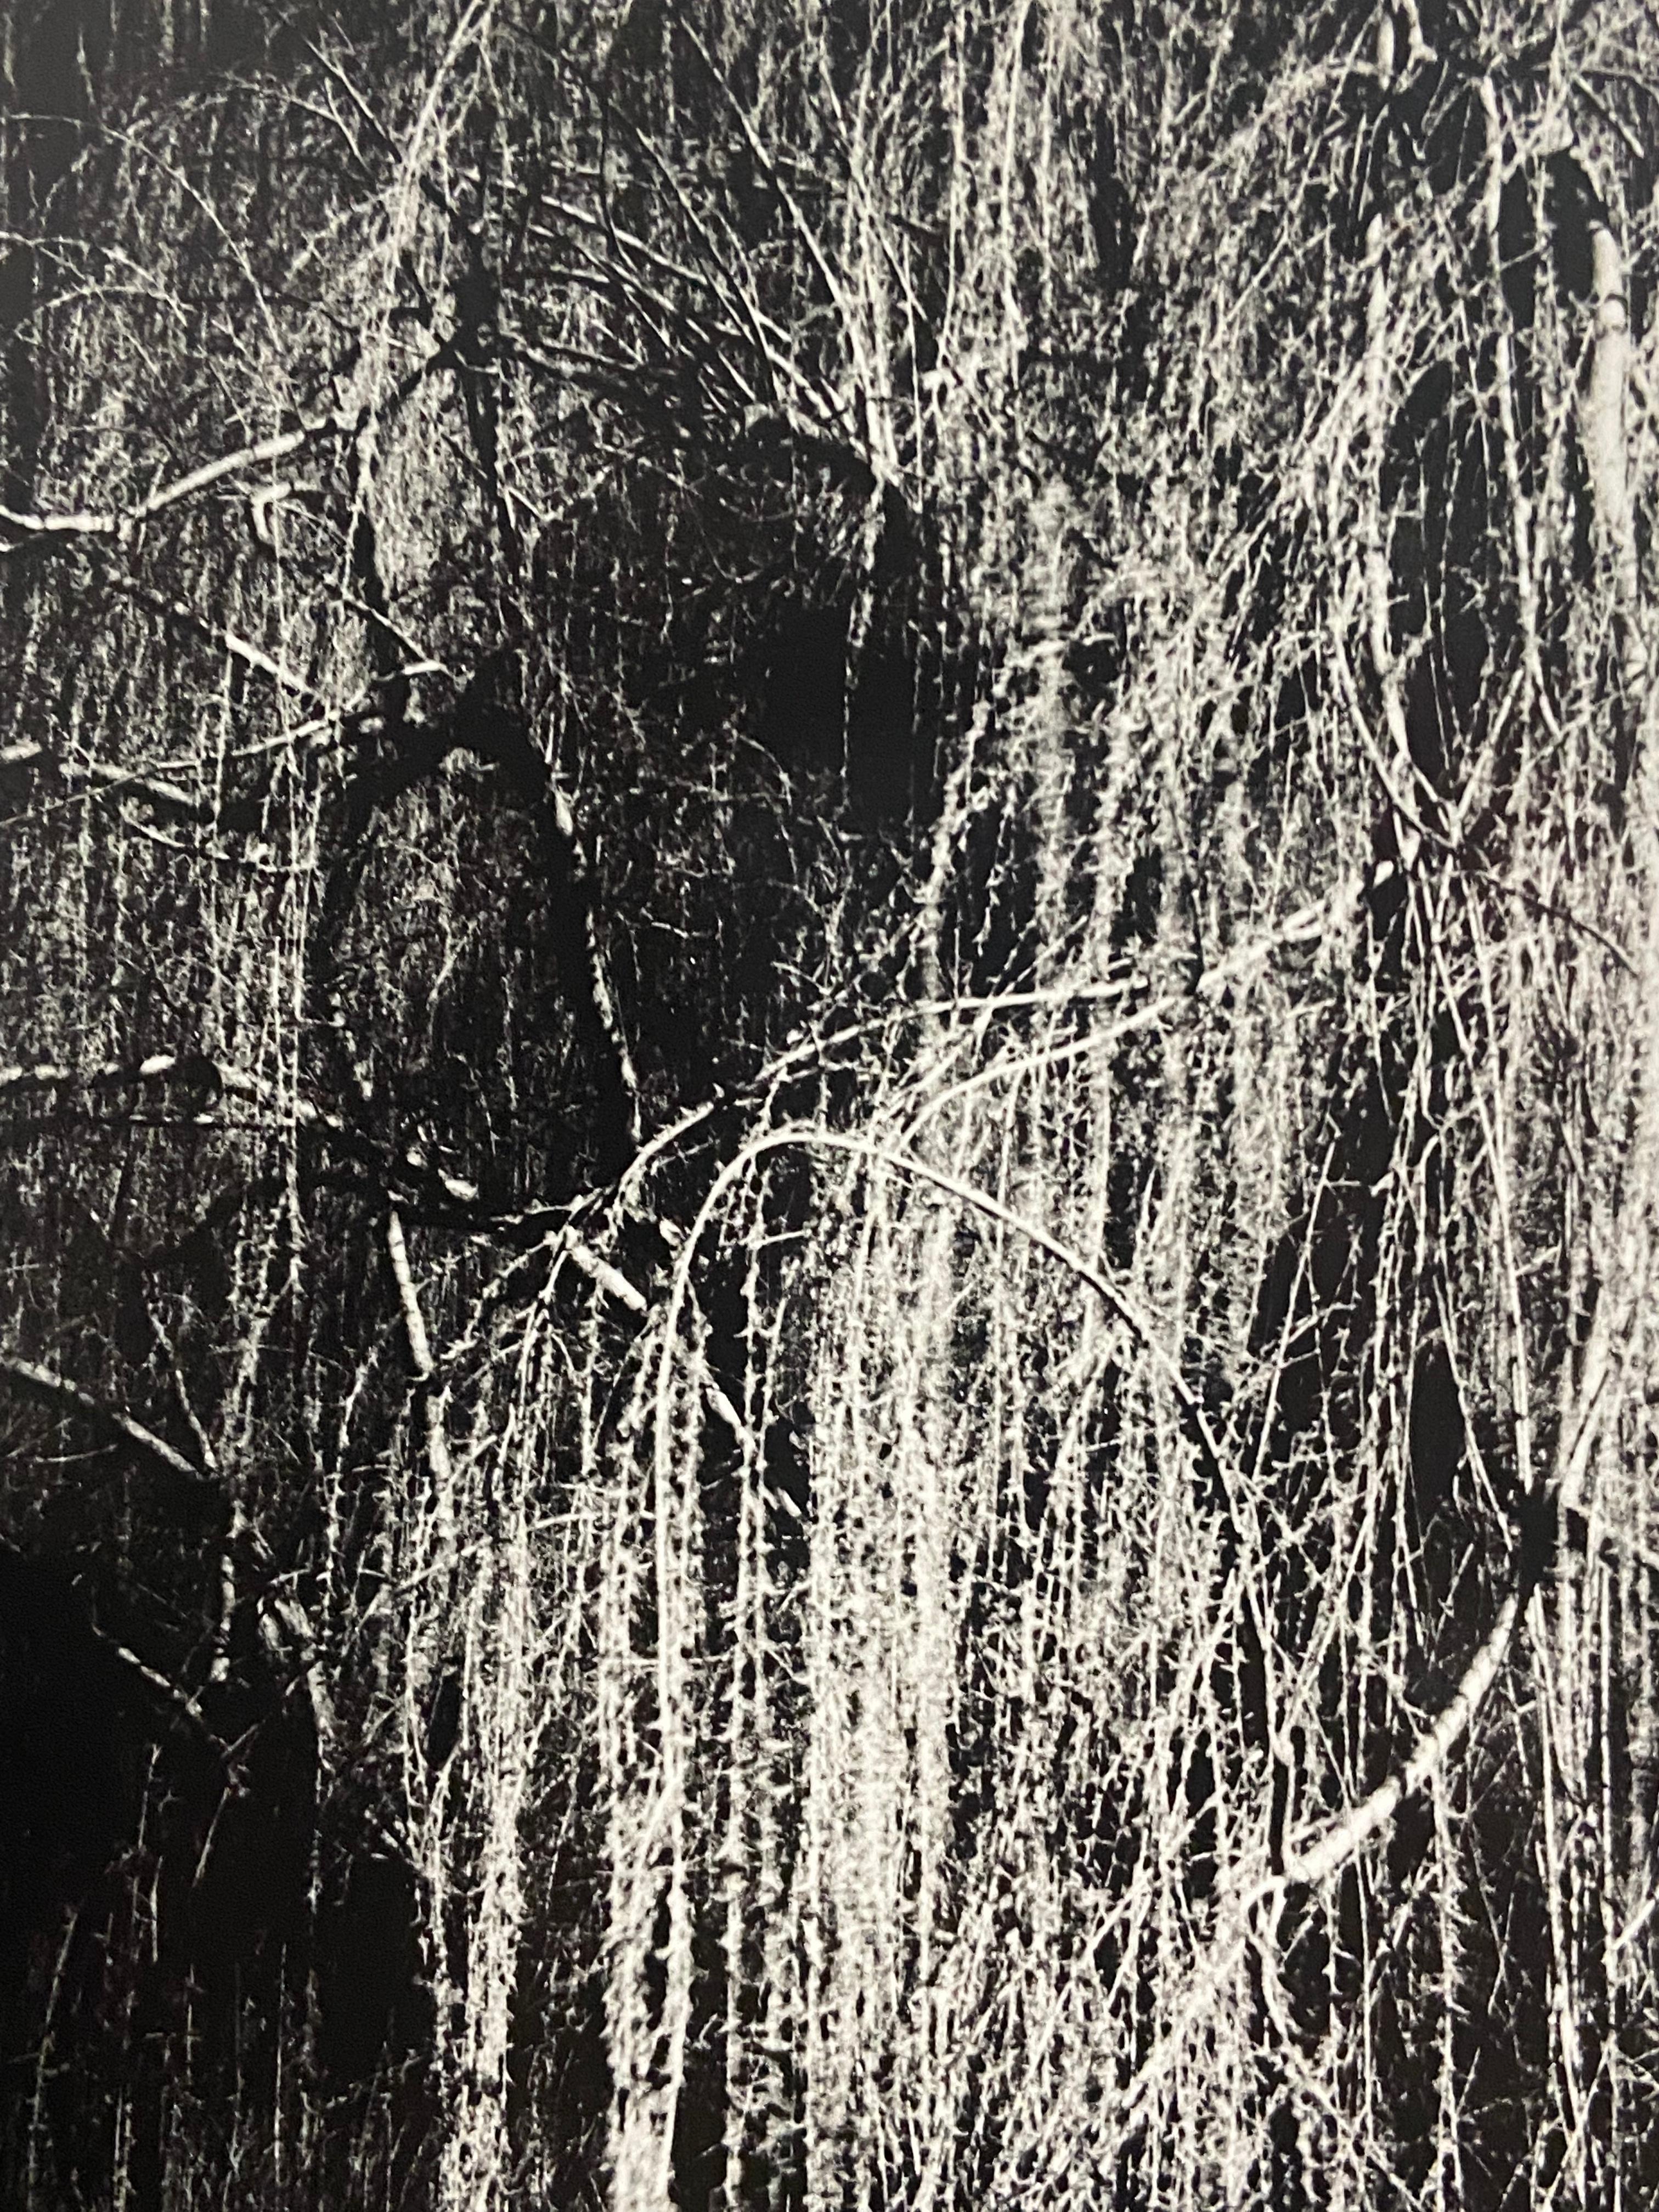 Willow #3 (Great Falls Park) – zeitgenössische Schwarz-Weiß-Landschaftsfotografie (Zeitgenössisch), Photograph, von Kimberly Schneider Photography